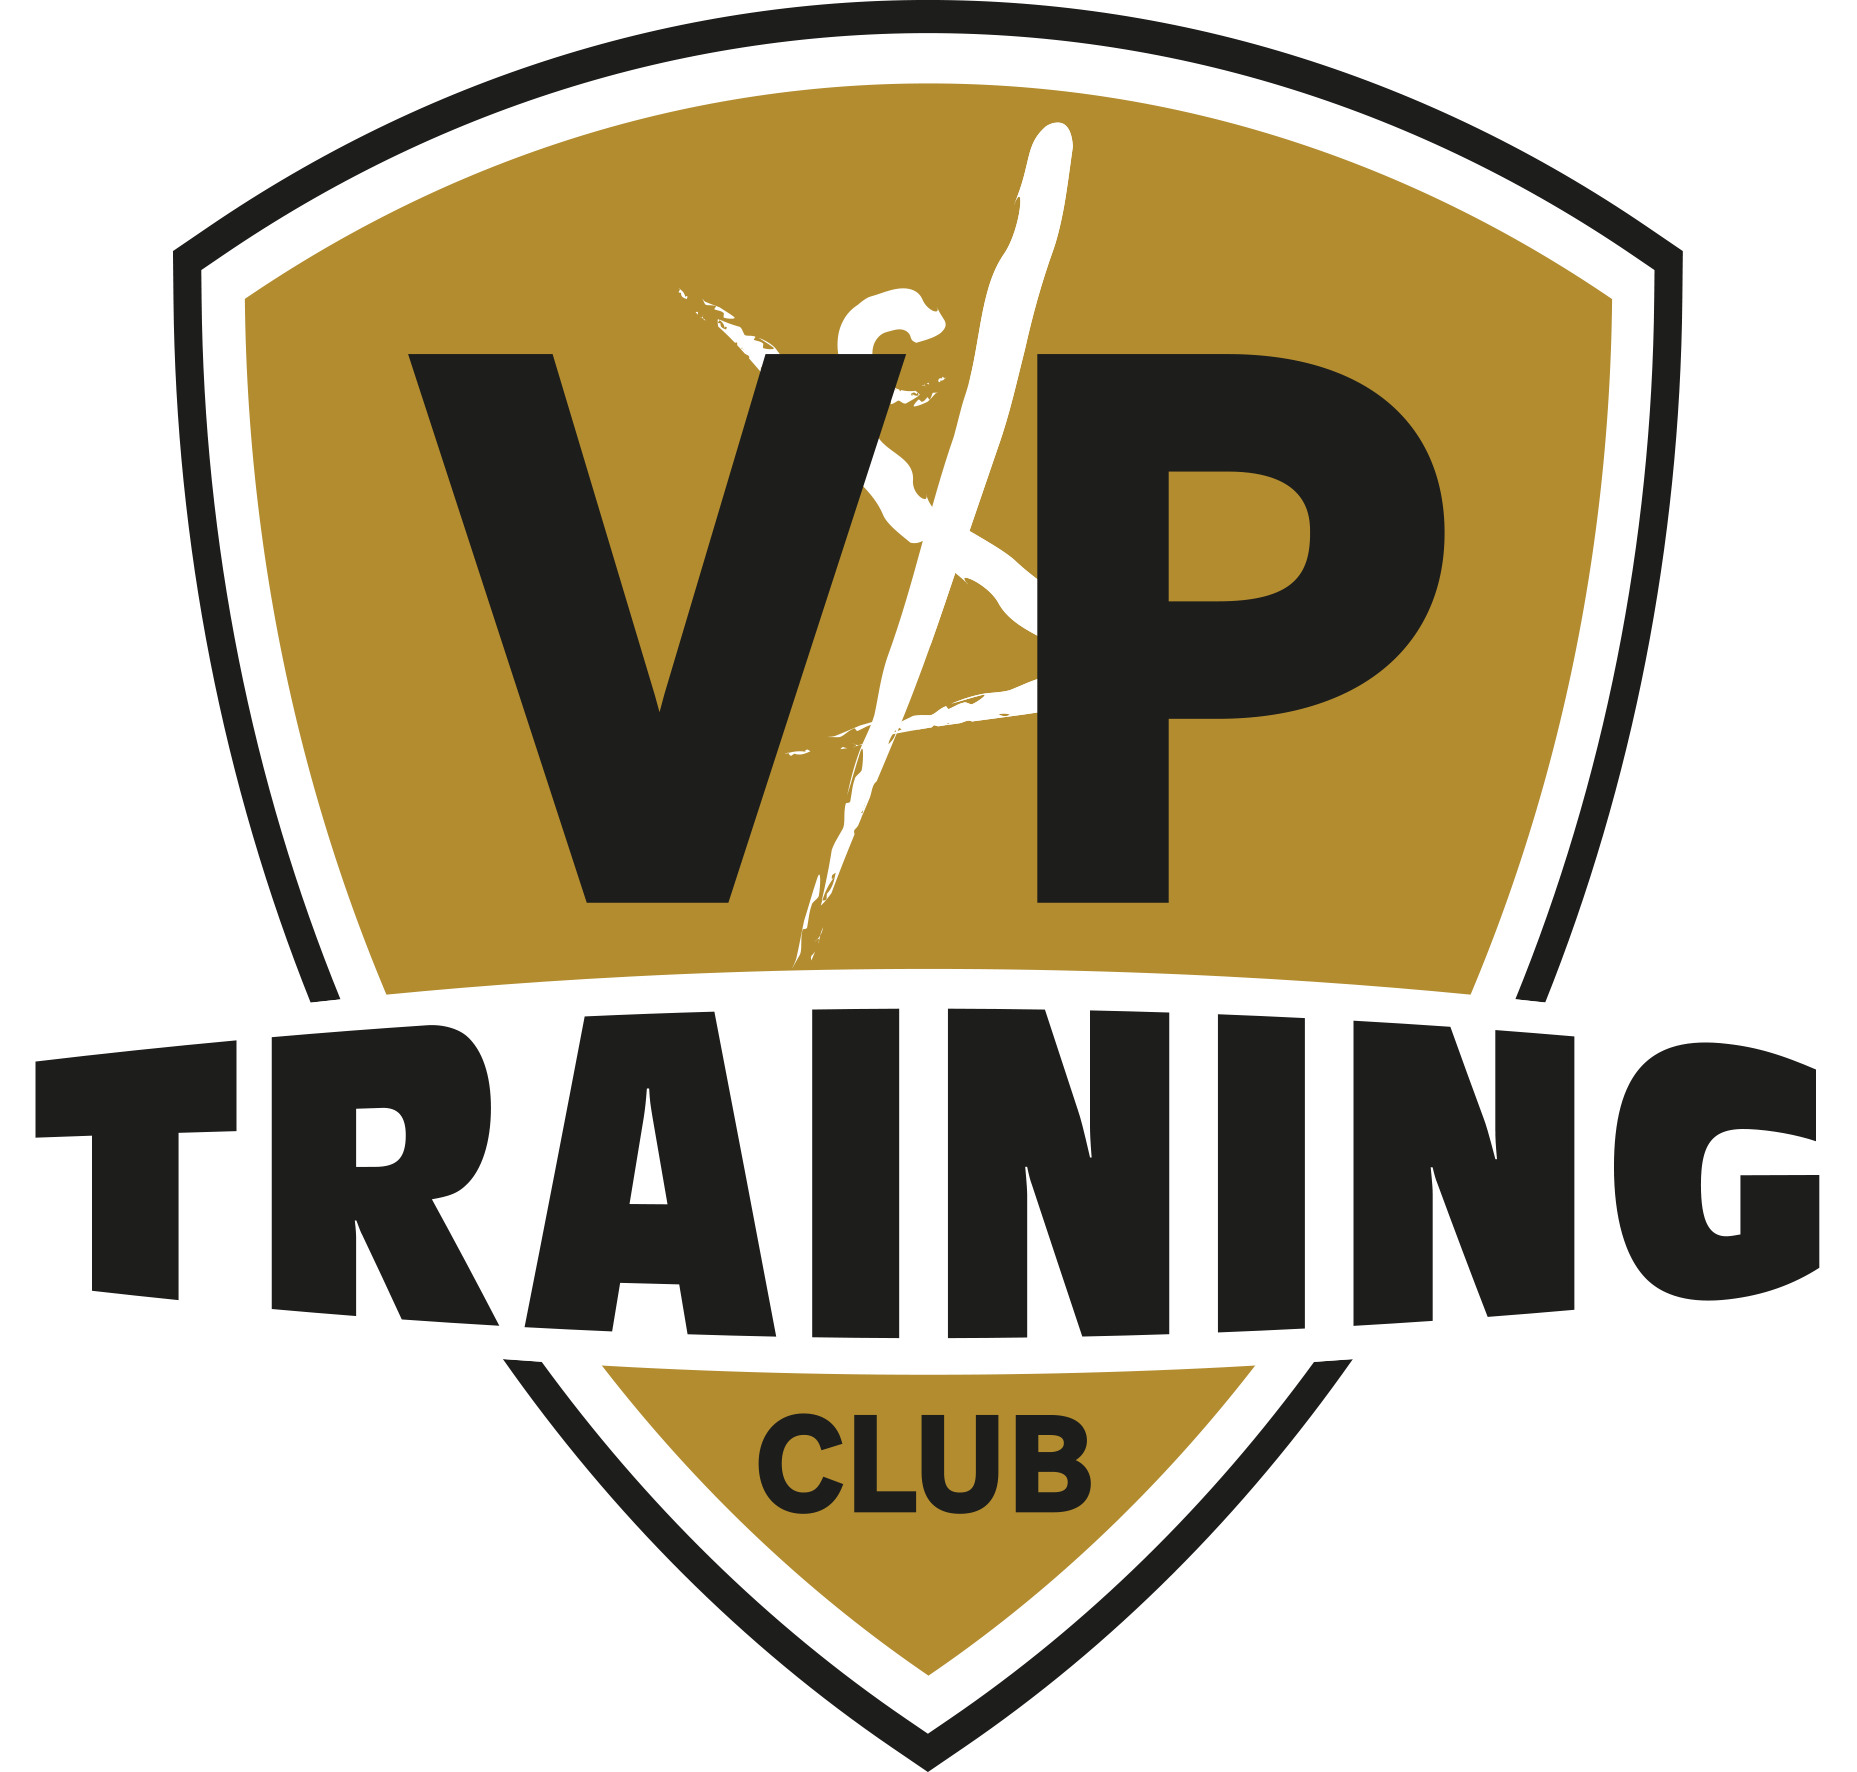 VP Training Club